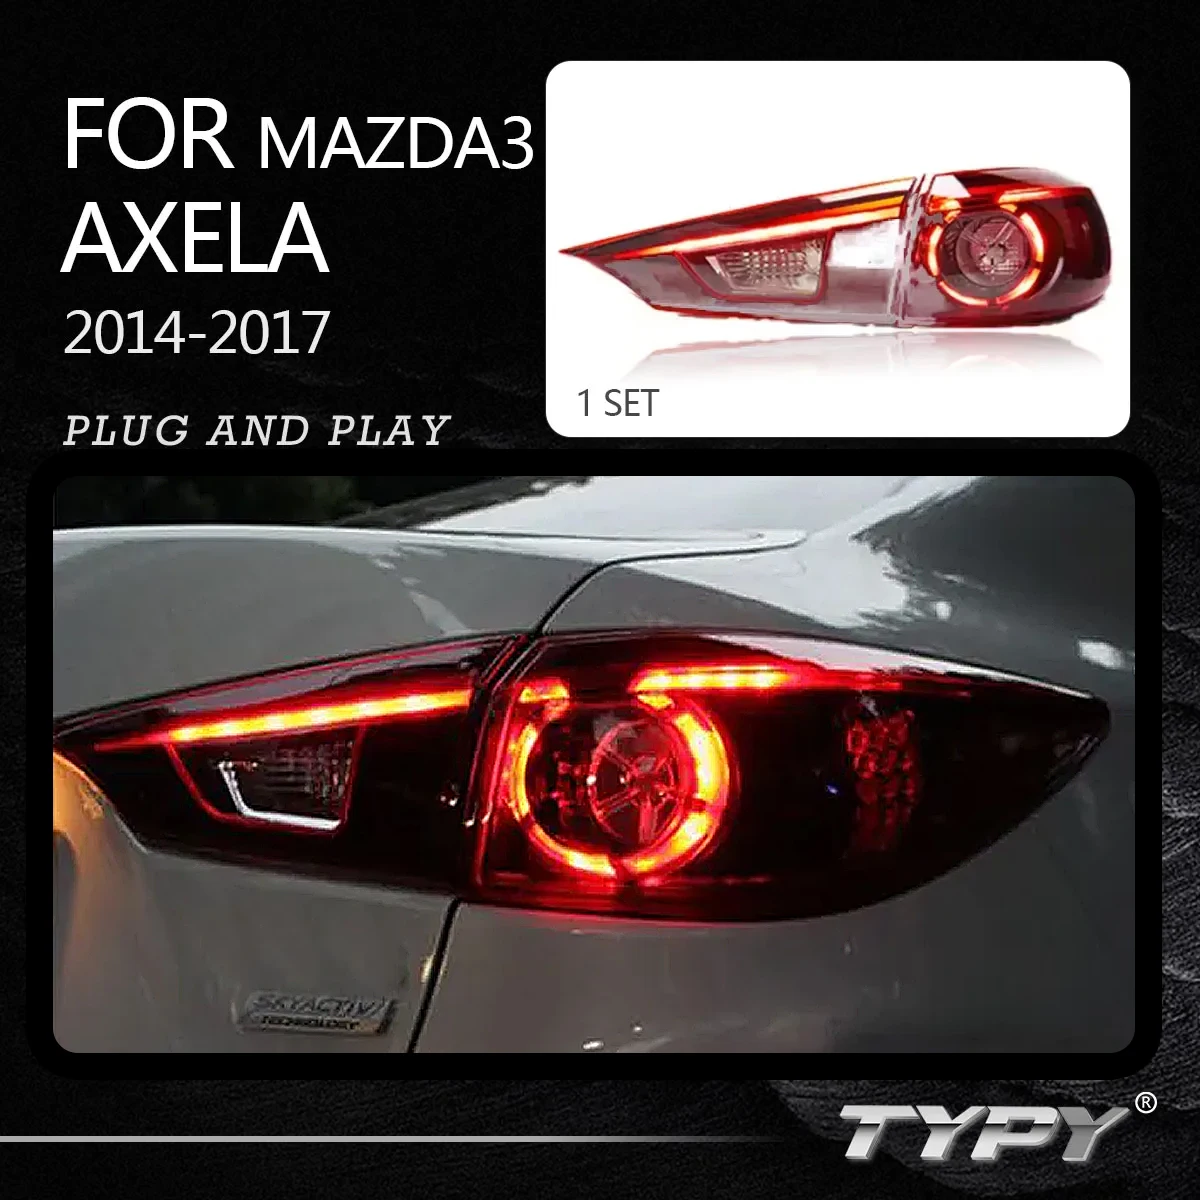 

Автомобильная задняя фара, модифицированные задние фонари, дневные ходовые огни, противотуманные фары, задний фонарь для Mazda 3 Mazda3 Axela 2014-2017